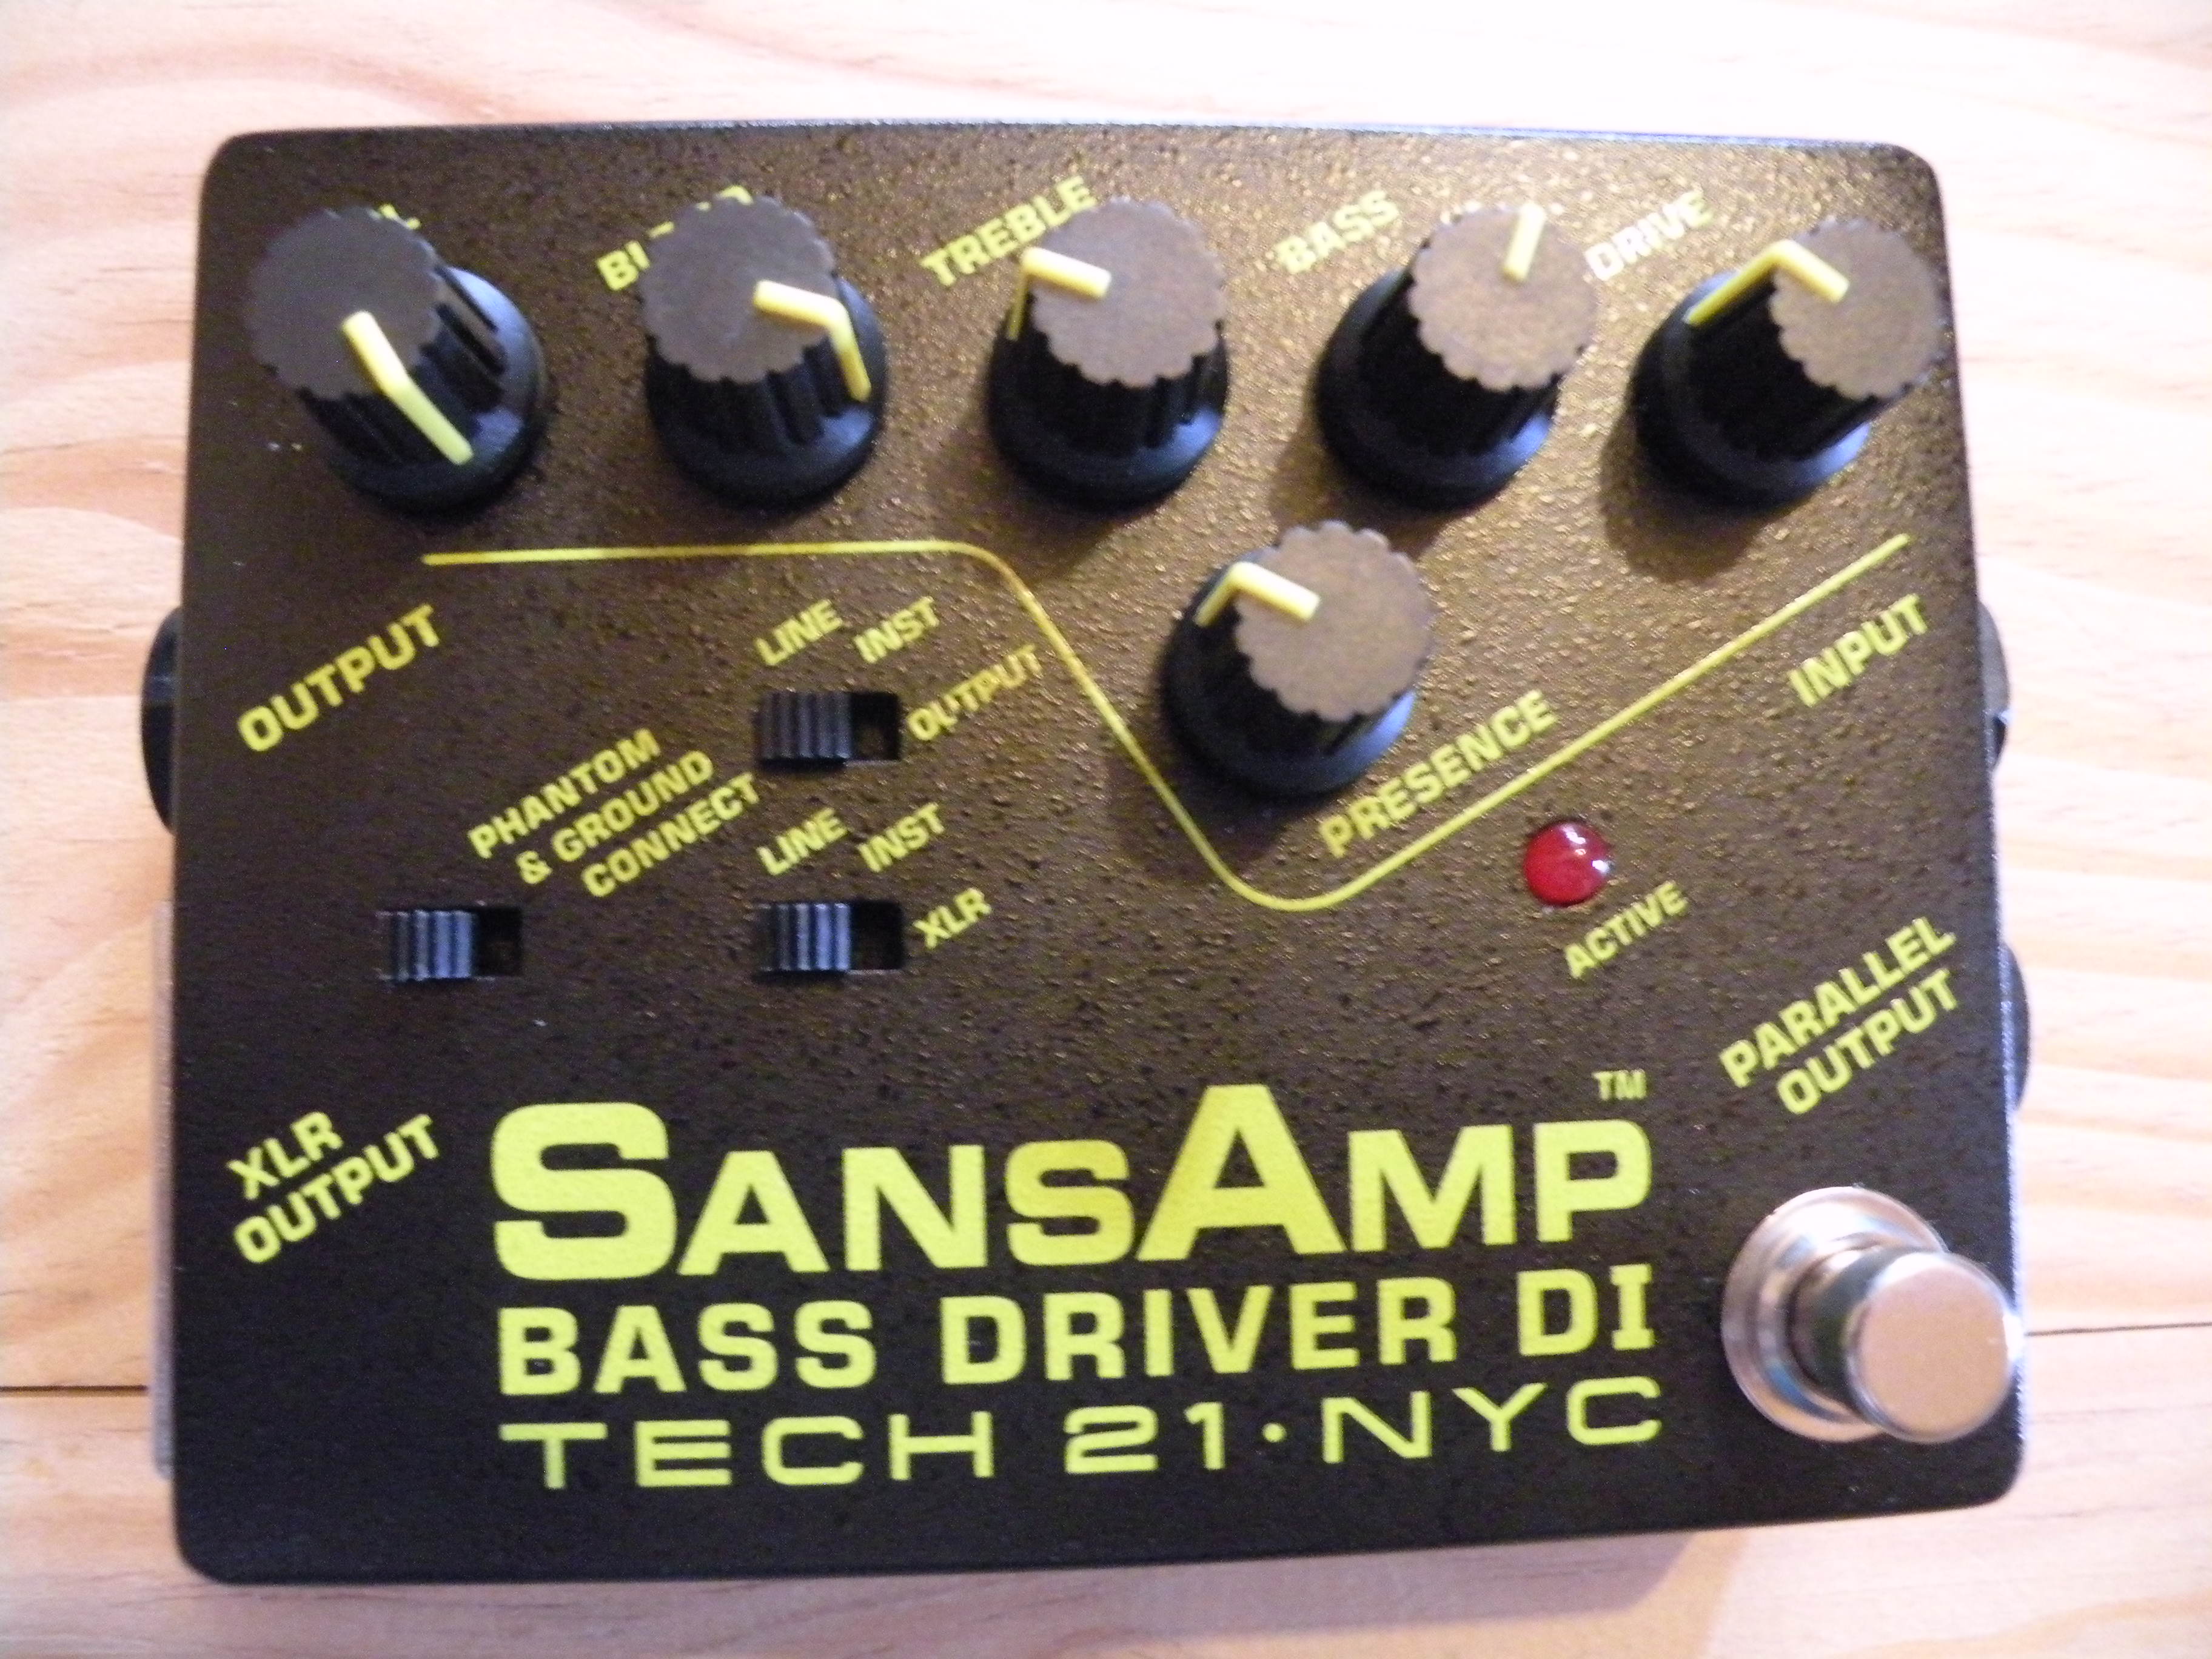 Tech 21 SansAmp Bass Driver DI image (#942081) - Audiofanzine